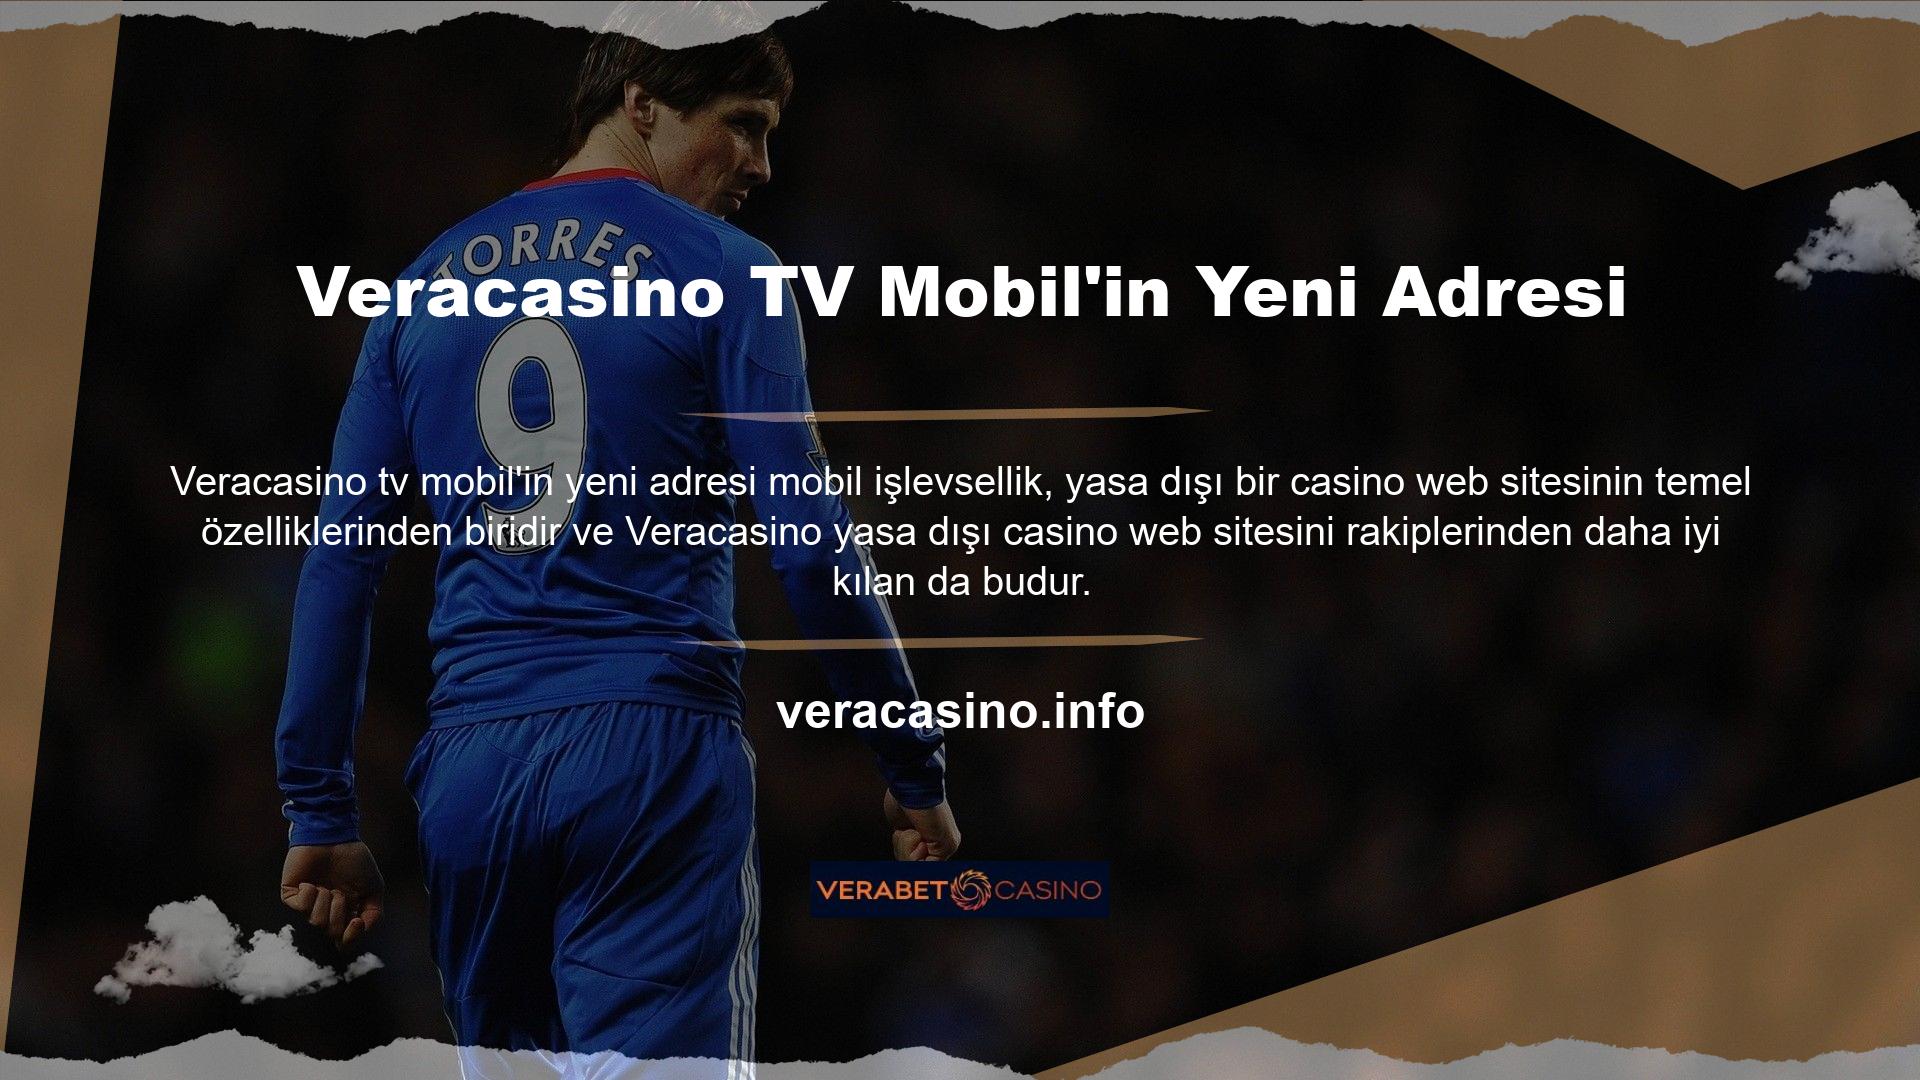 Veracasino TV Mobil'in yeni adresi, diğer rakip sitelerden farklı olarak kullanıcılara mobil cihazlardan ulaşılabilecek bir deneyim sunuyor